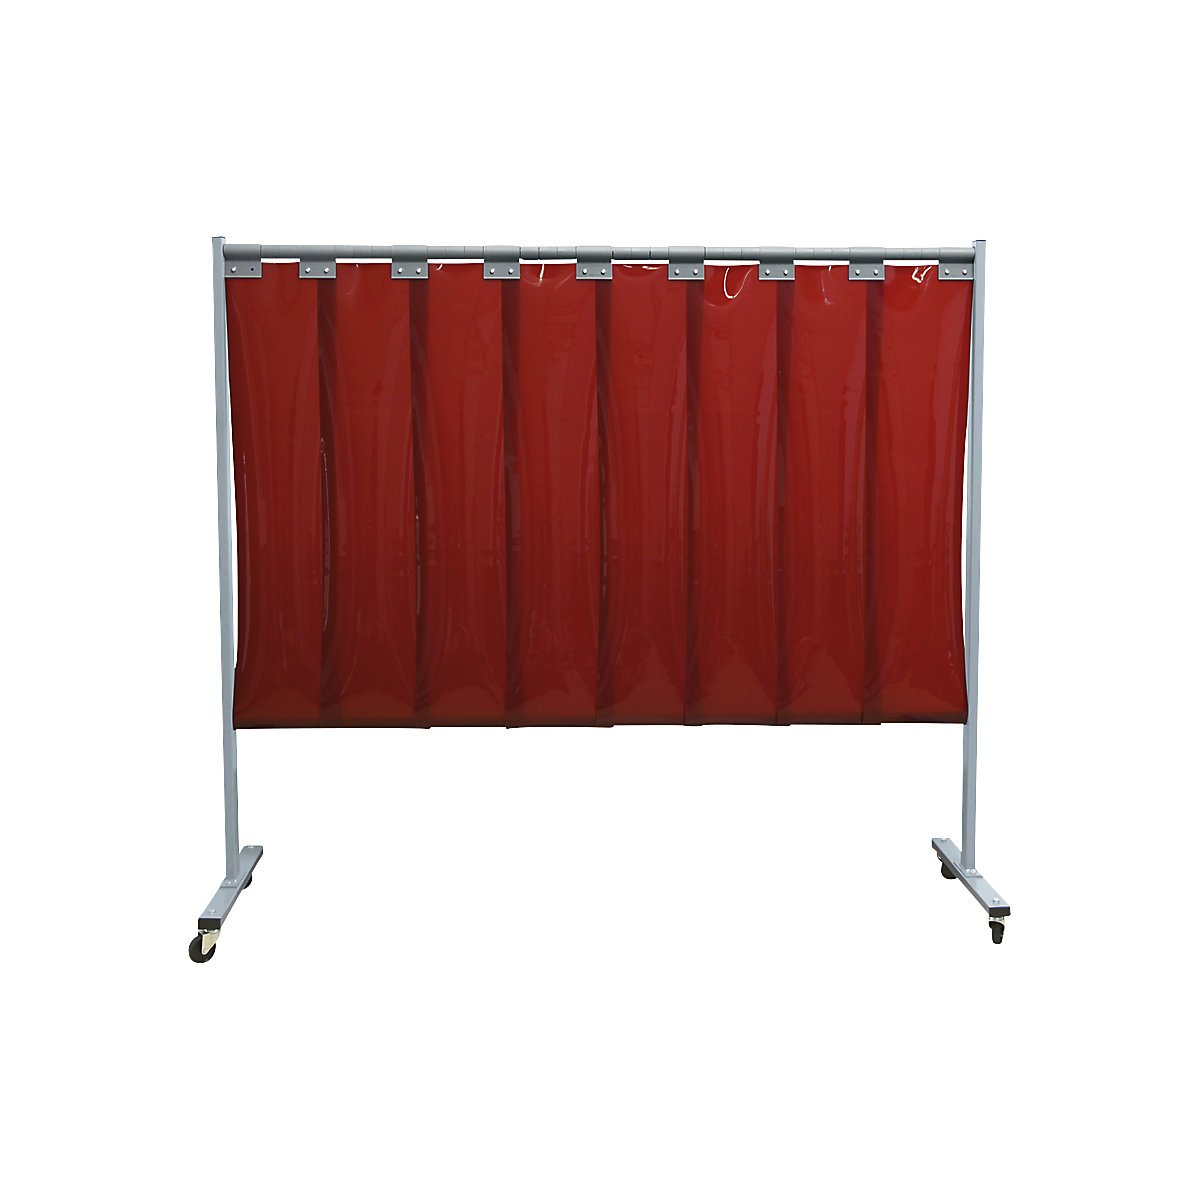 Pojízdná ochranná stěna pro svářeče, 1-dílné provedení, v x š 1900 x 2100 mm, s lamelovým závěsem, červená